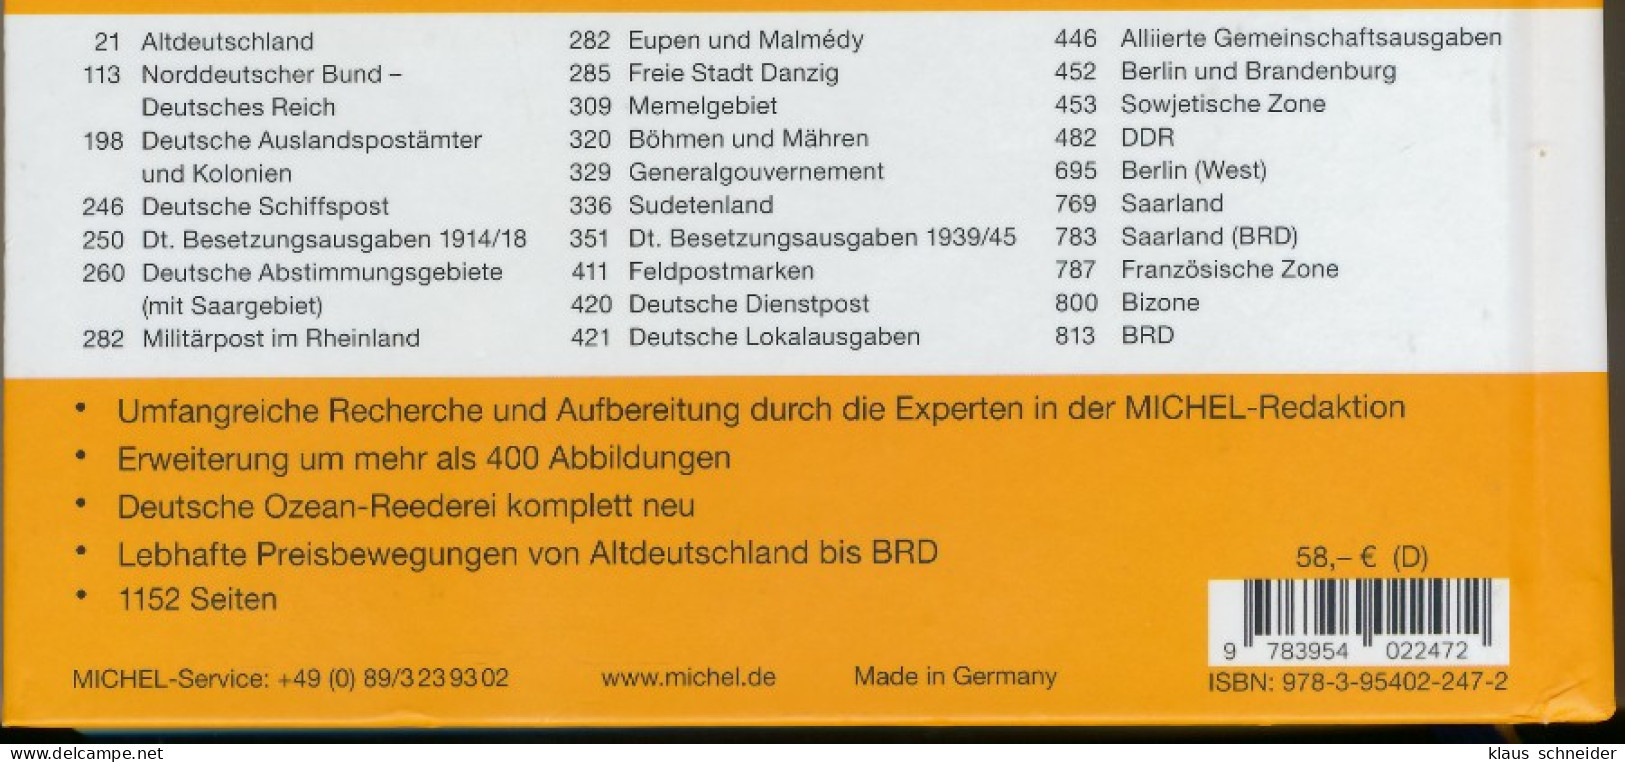 MICHEL DEUTSCHLAND 2018 19 GEBRAUCHT X416AB6 - Germany